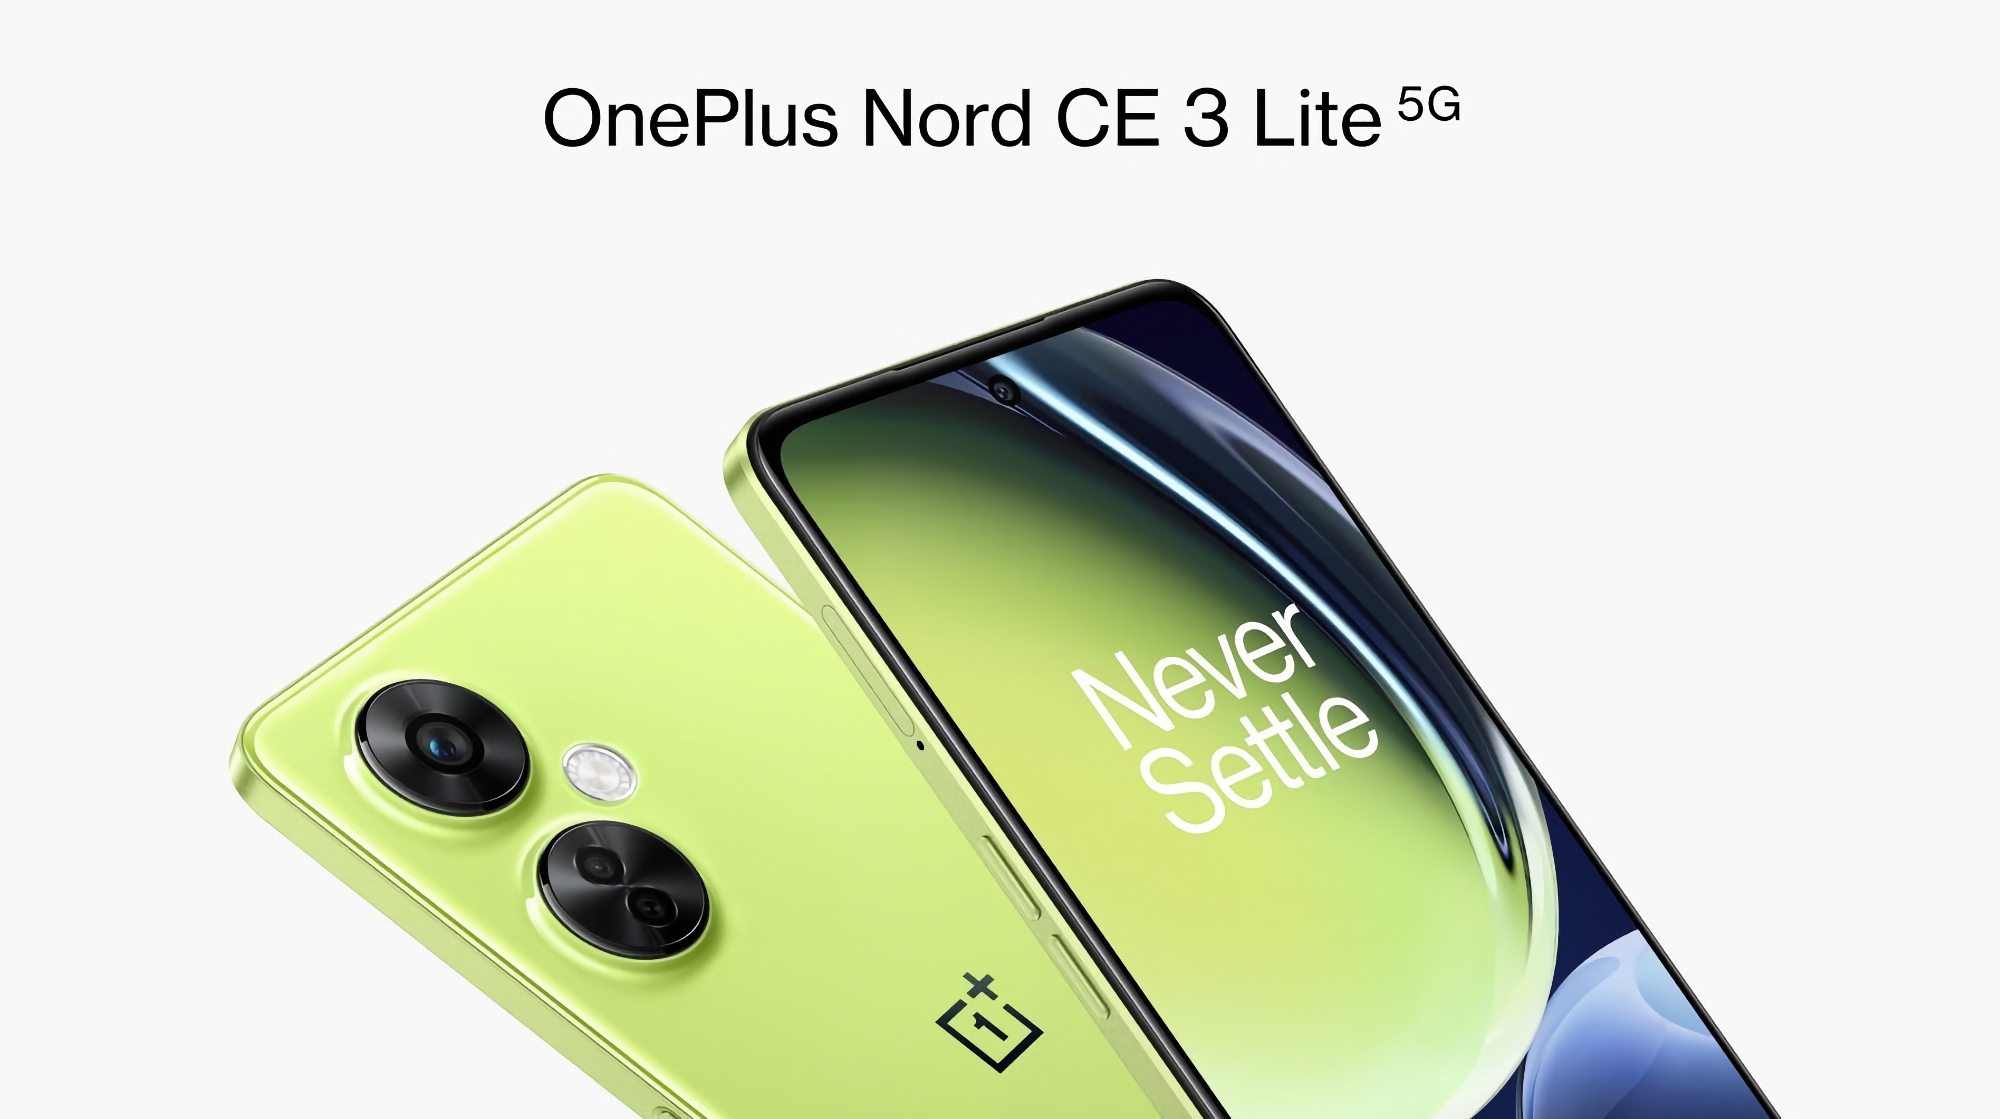 Le OnePlus Nord CE 3 Lite avec écran 120Hz, puce Snapdragon 695 et appareil photo 108 MP sera commercialisé aux États-Unis sous le nom de OnePlus Nord N30.